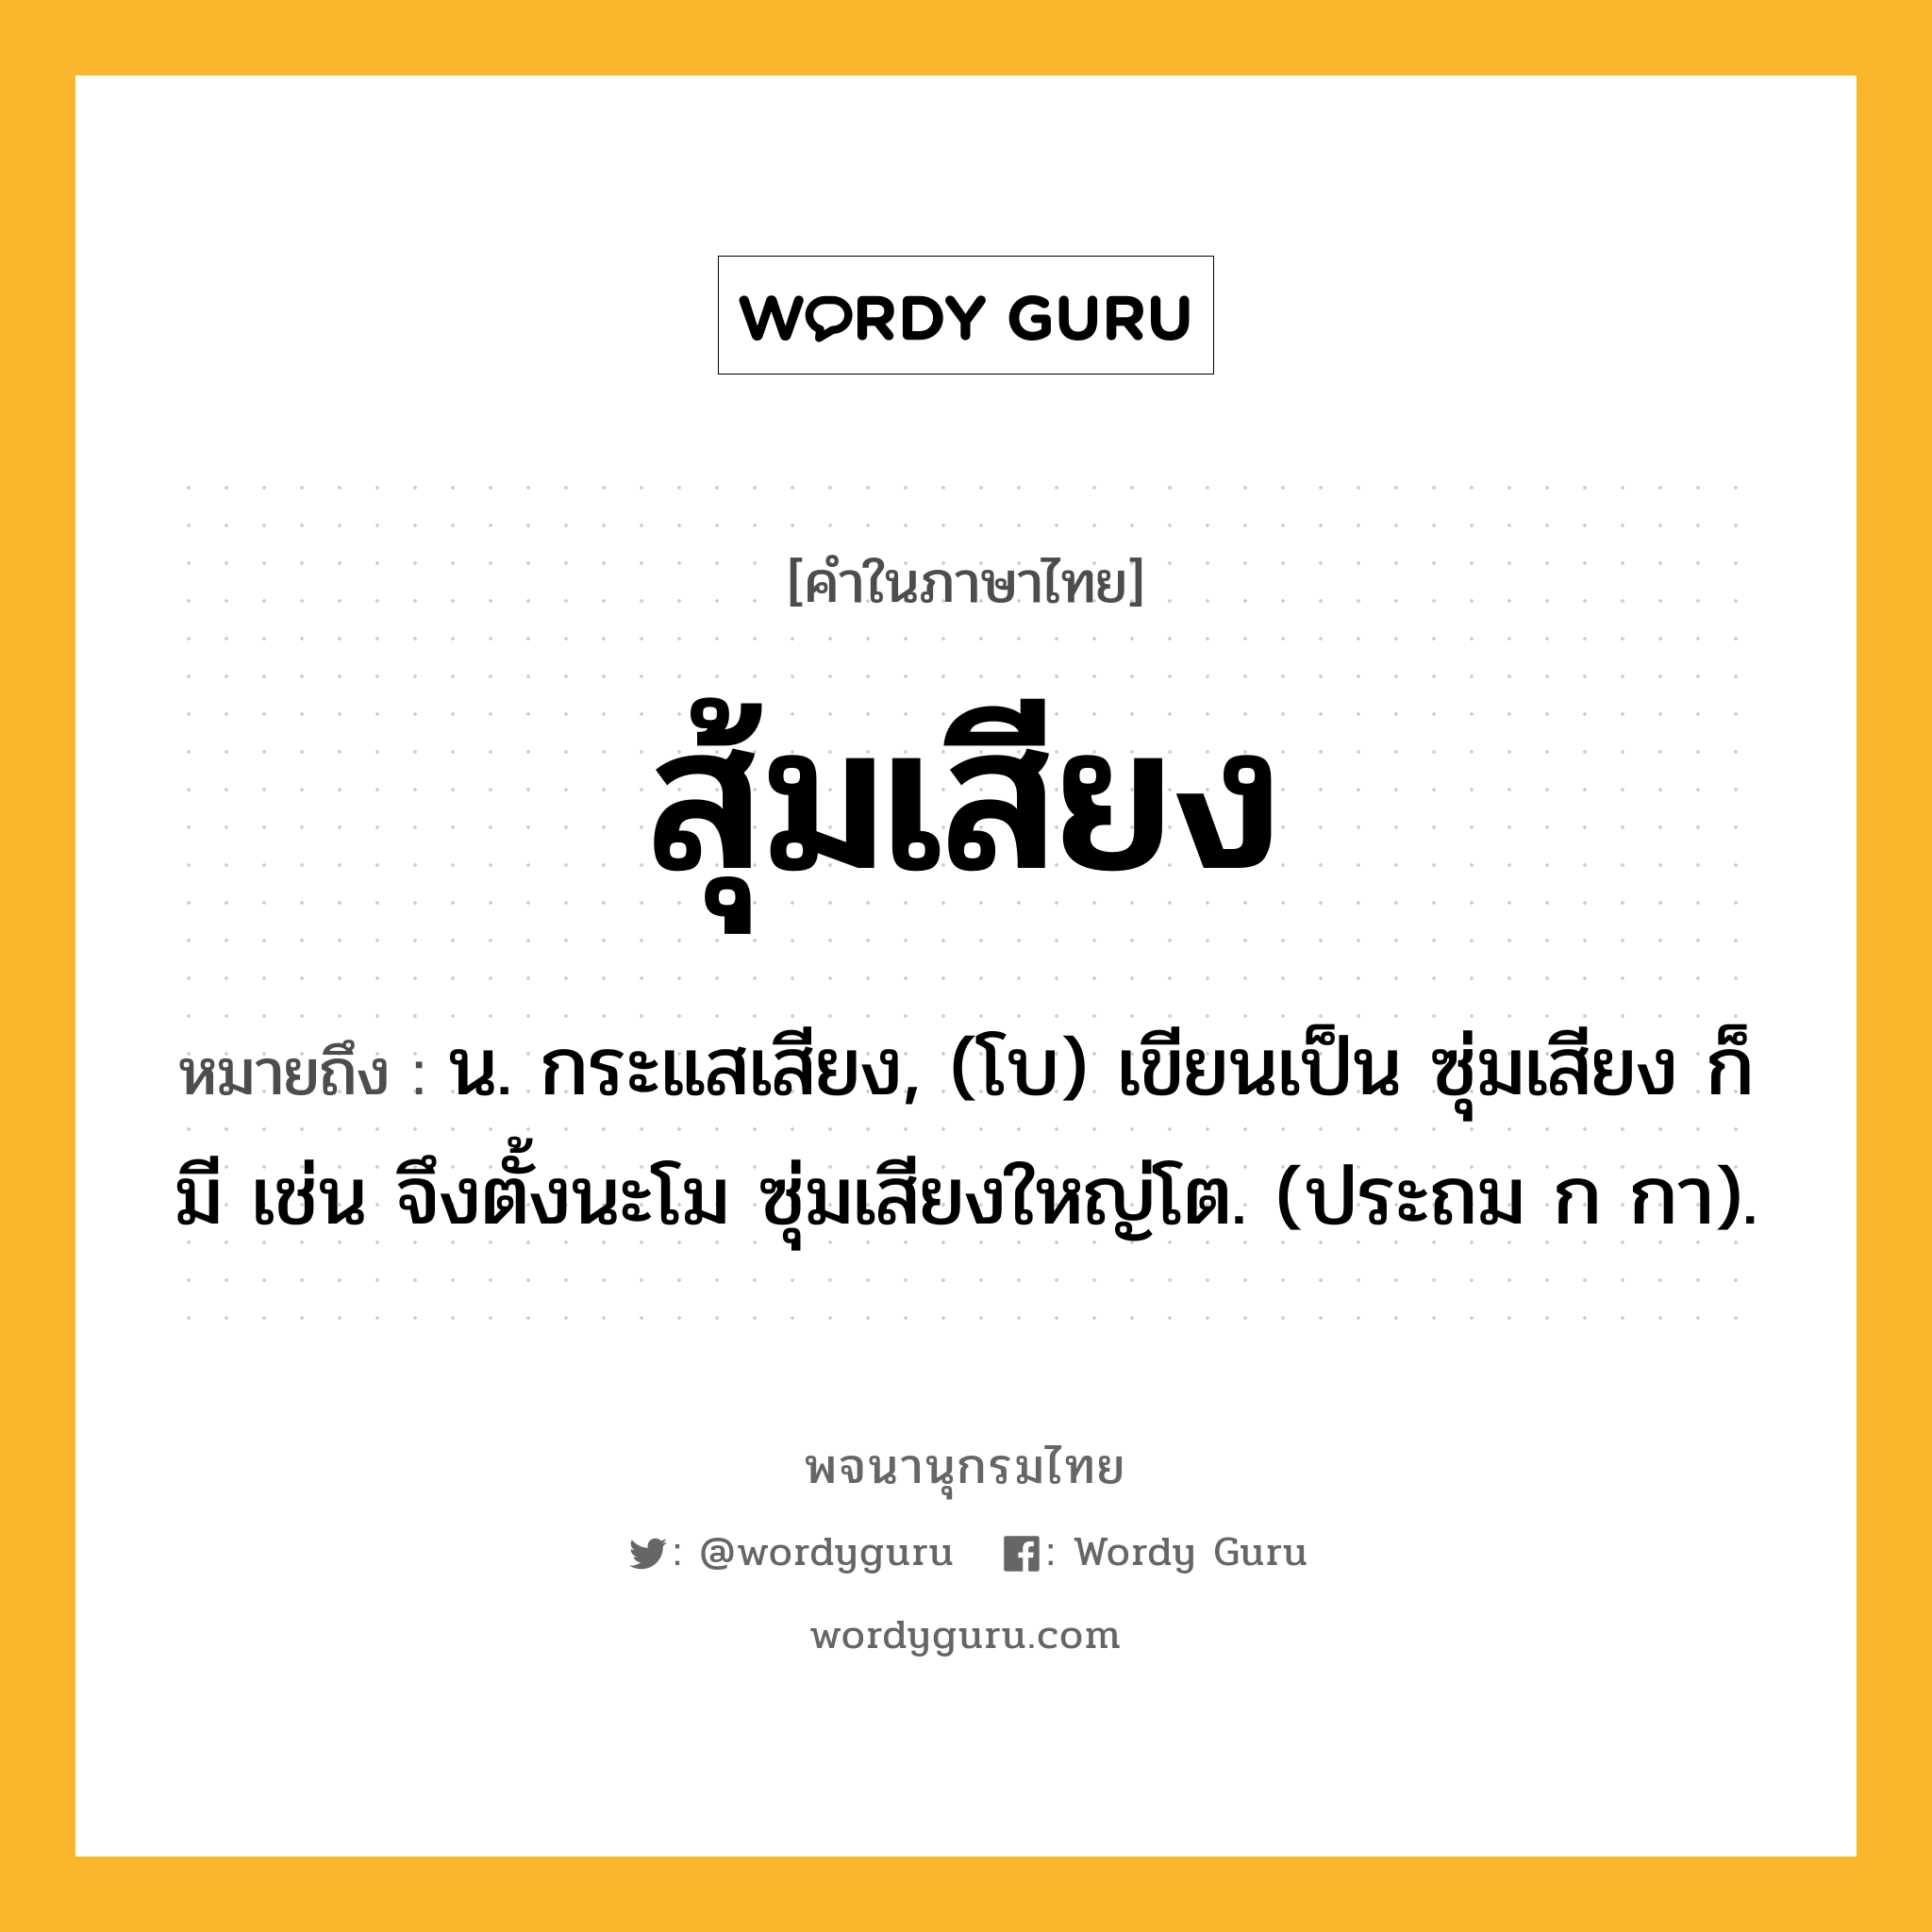 สุ้มเสียง หมายถึงอะไร?, คำในภาษาไทย สุ้มเสียง หมายถึง น. กระแสเสียง, (โบ) เขียนเป็น ซุ่มเสียง ก็มี เช่น จึงตั้งนะโม ซุ่มเสียงใหญ่โต. (ประถม ก กา).